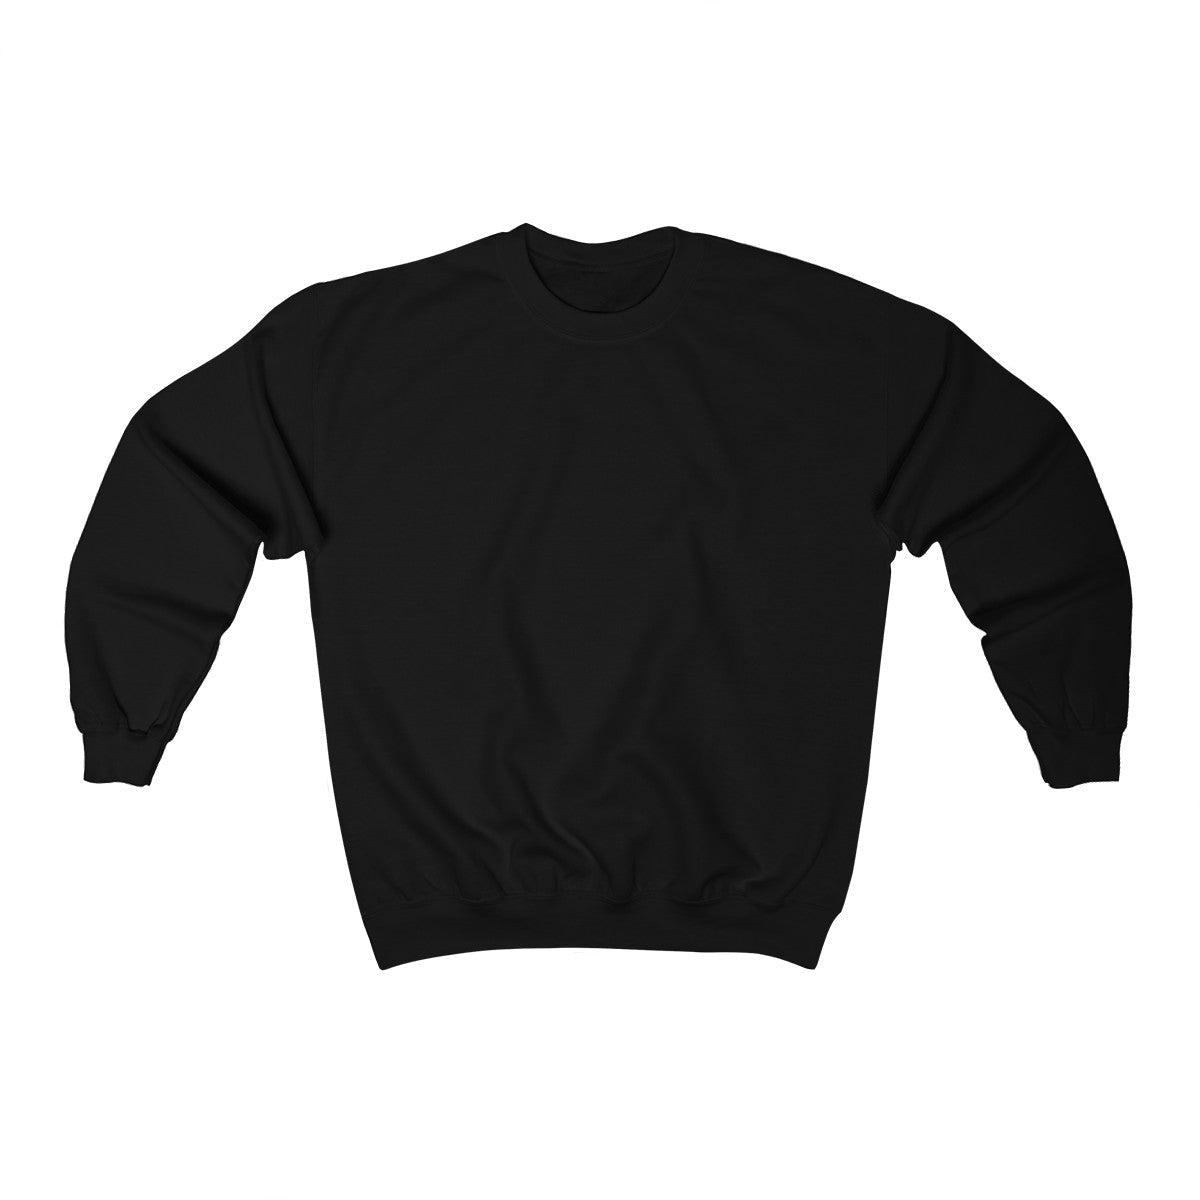 Personalized TICU Sweatshirt - Kidney & Liver Design